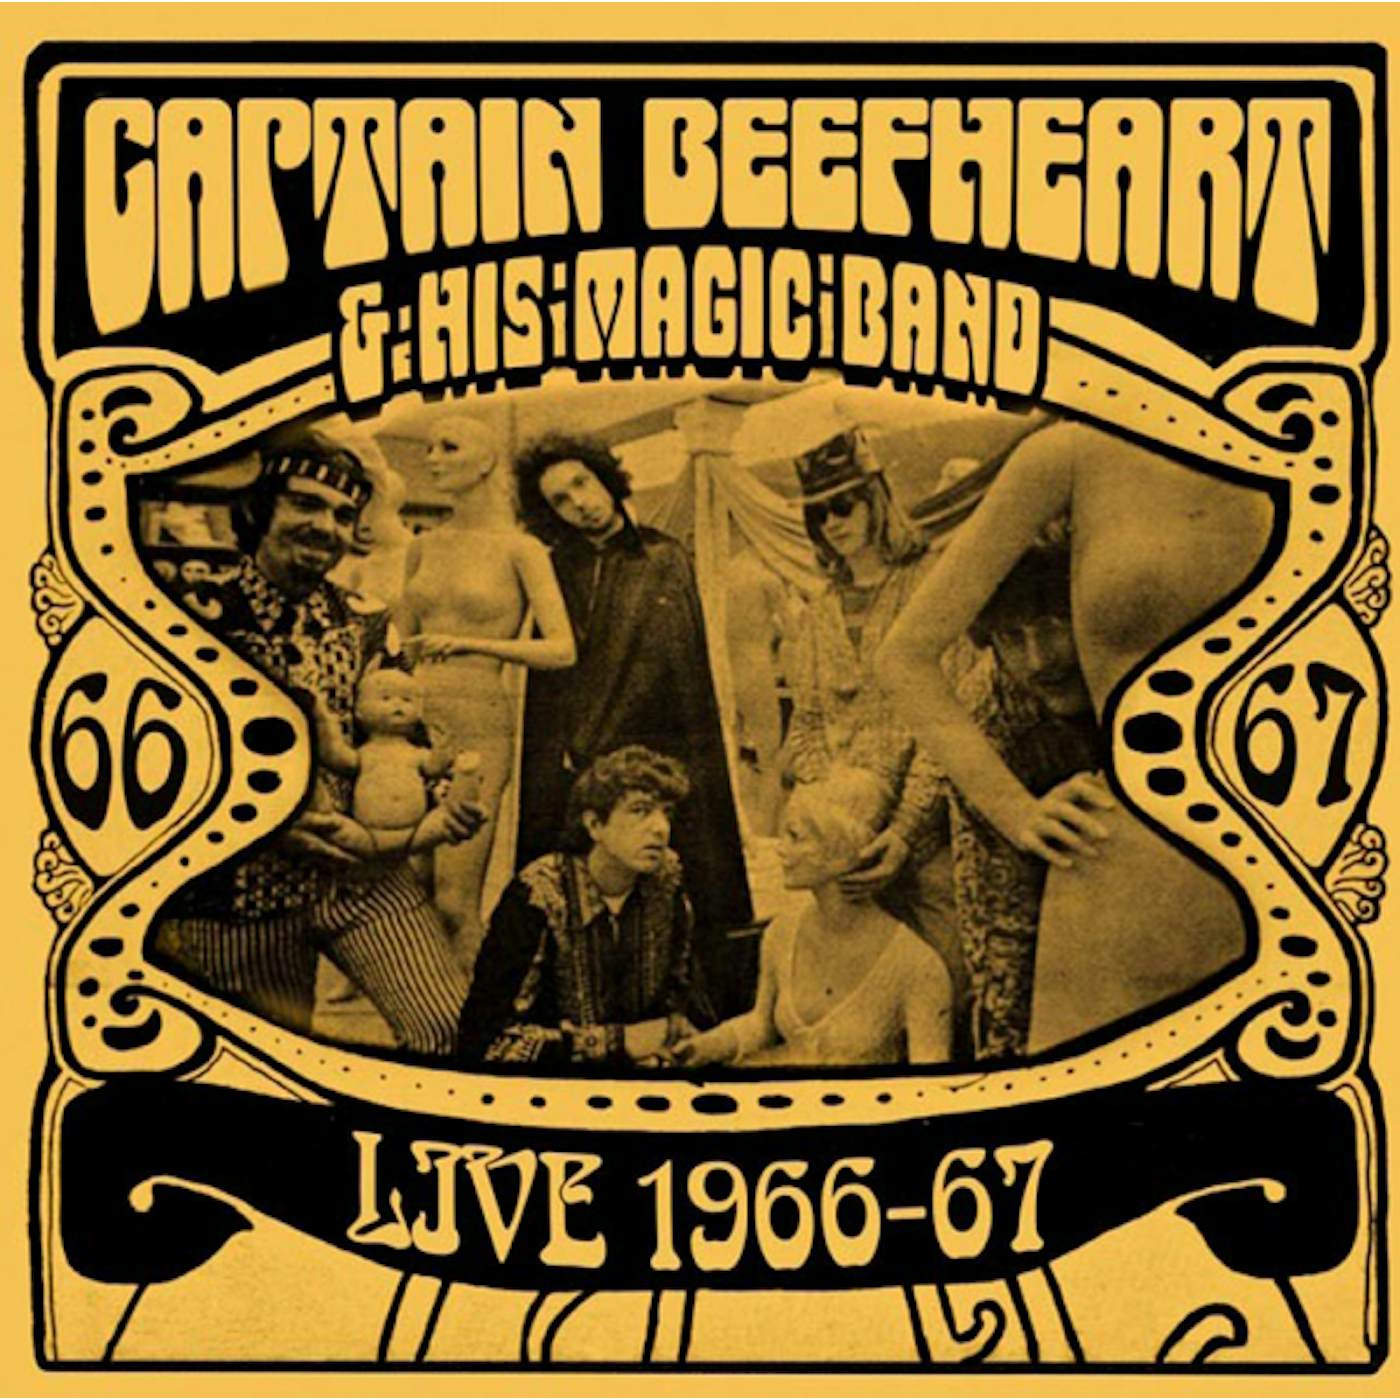 Captain Beefheart & His Magic Band Live 1966-67 Vinyl Record